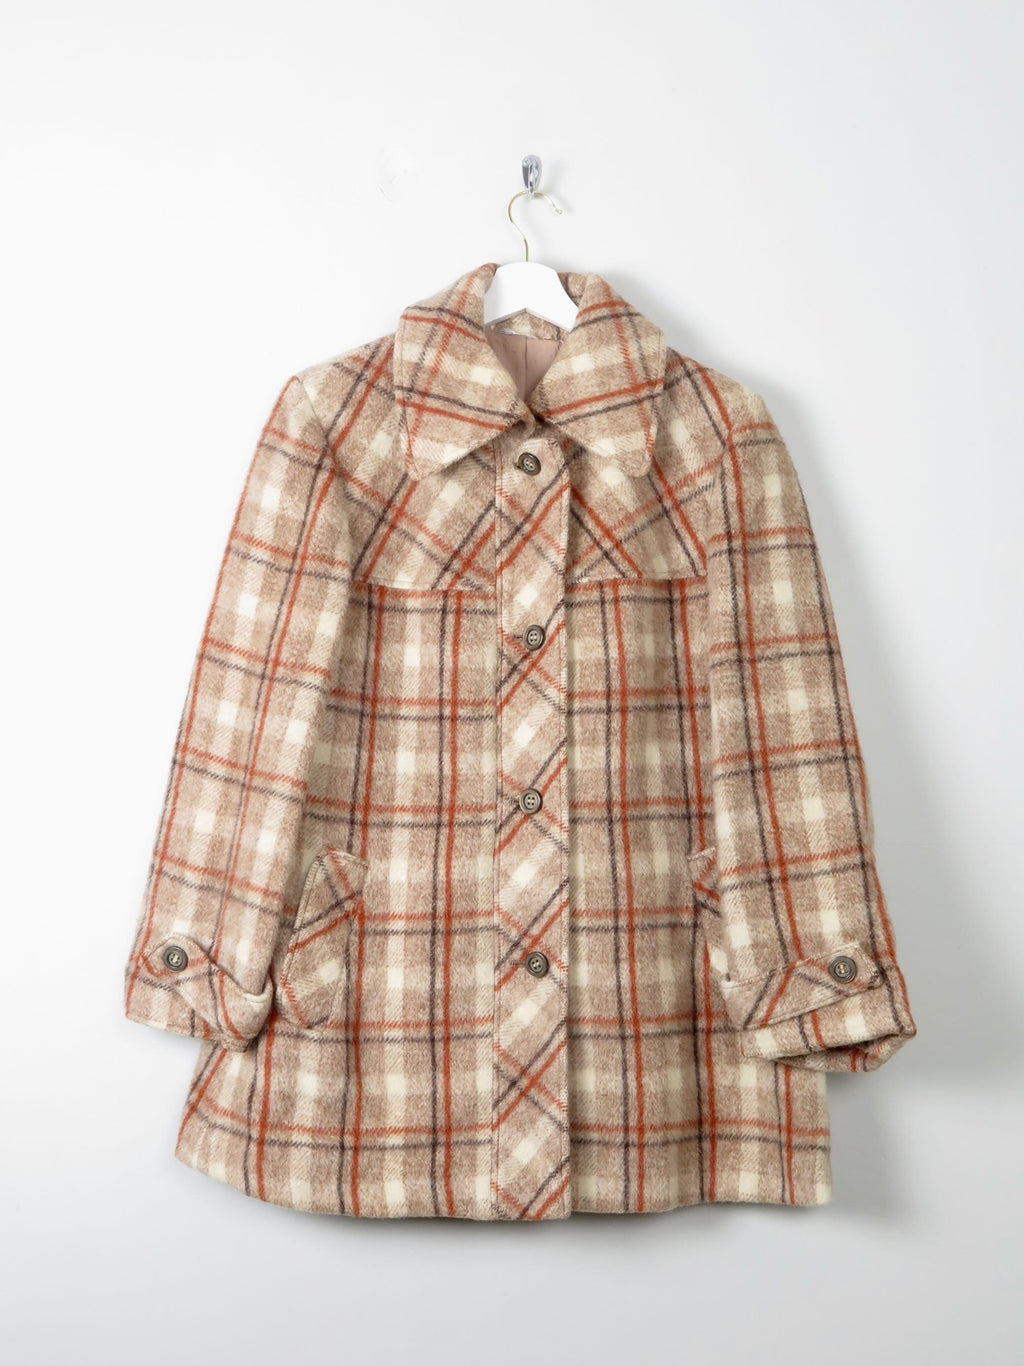 Women's Tweed Vintage  Short Coat S/M - The Harlequin